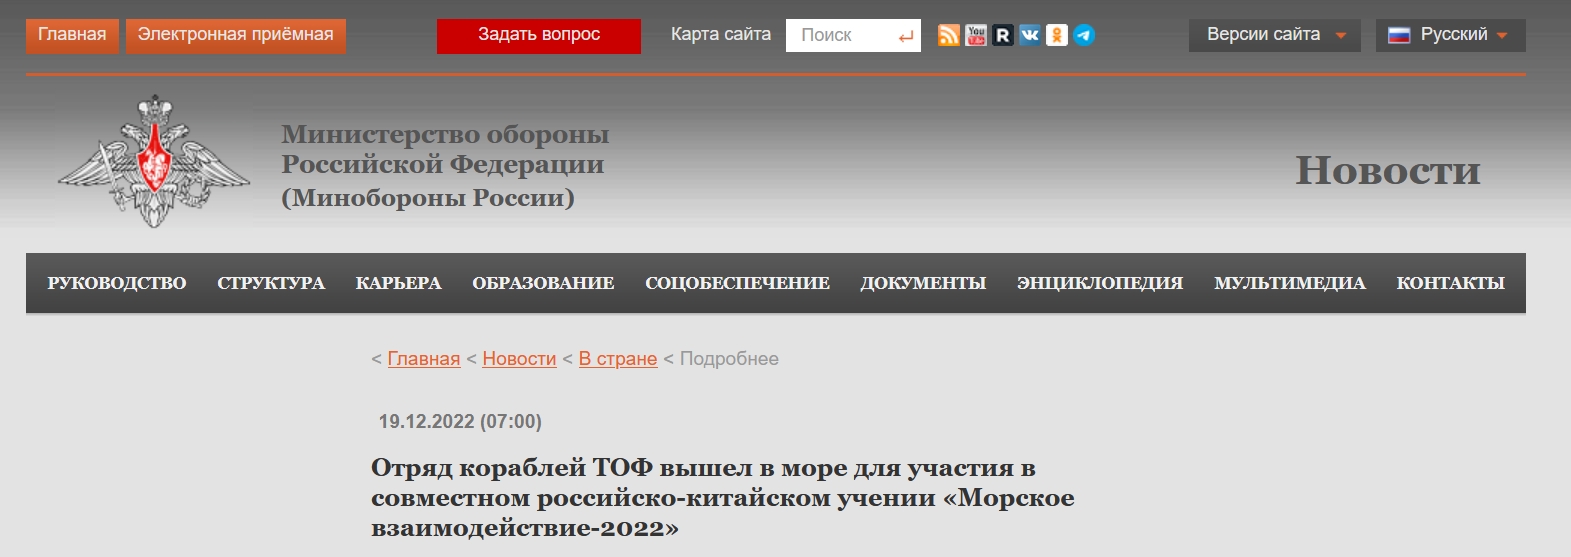 俄罗斯国防部网站消息截图